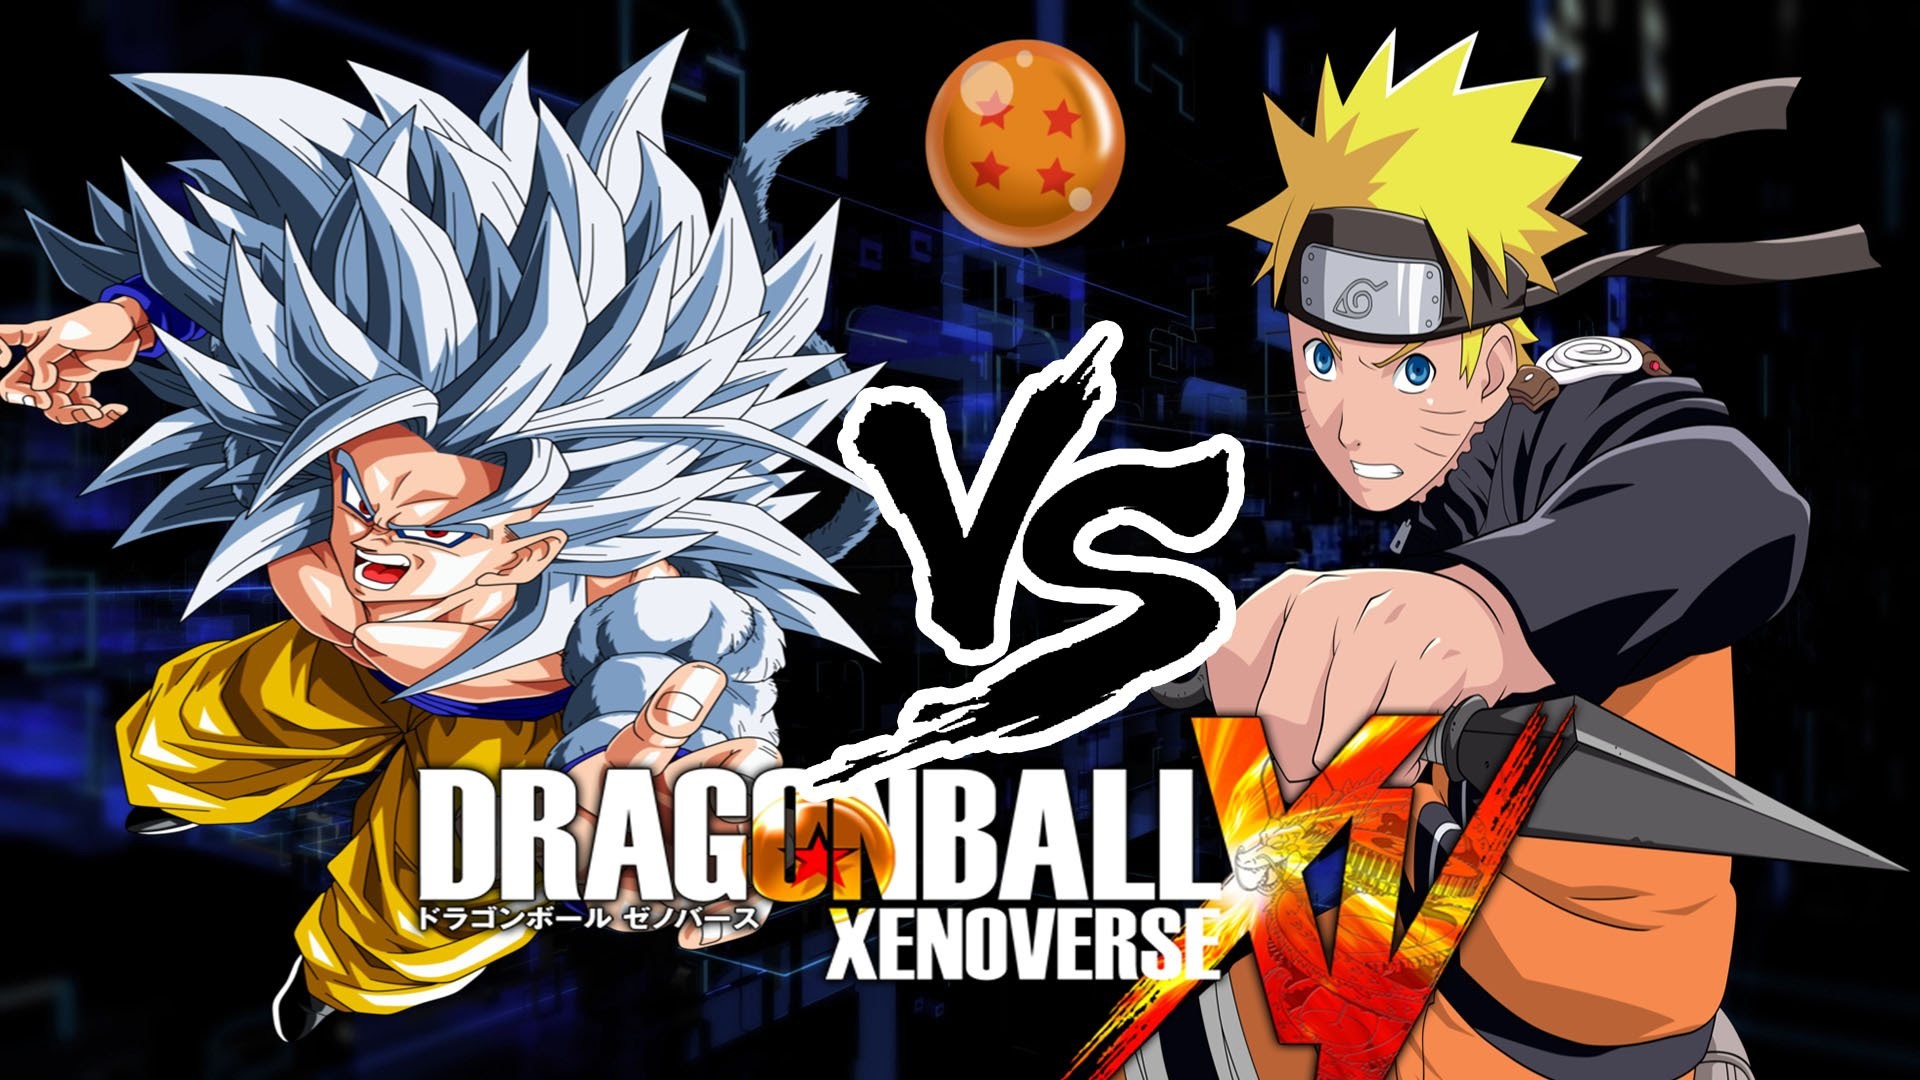 Dragon Ball Xenoverse PC Super Saiyan 5 Goku vs Naruto PC Mods – YouTube